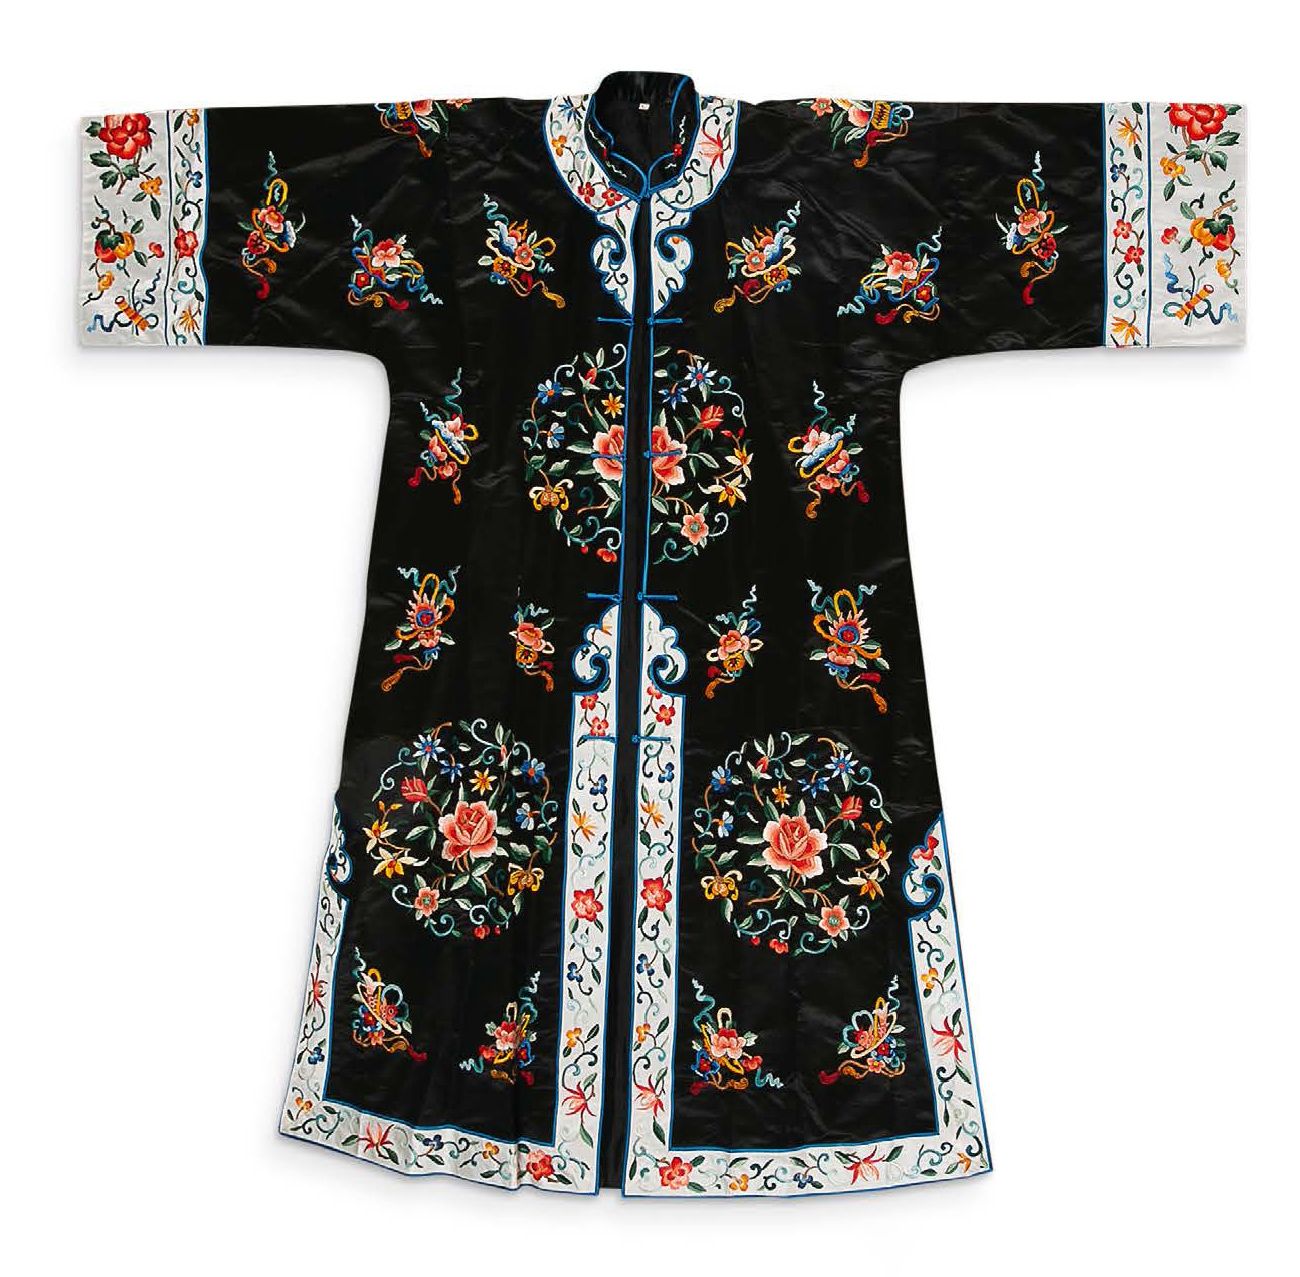 Chine du Sud vers 1920 
中国南方 1920年代左右

黑地花卉纹绣袍